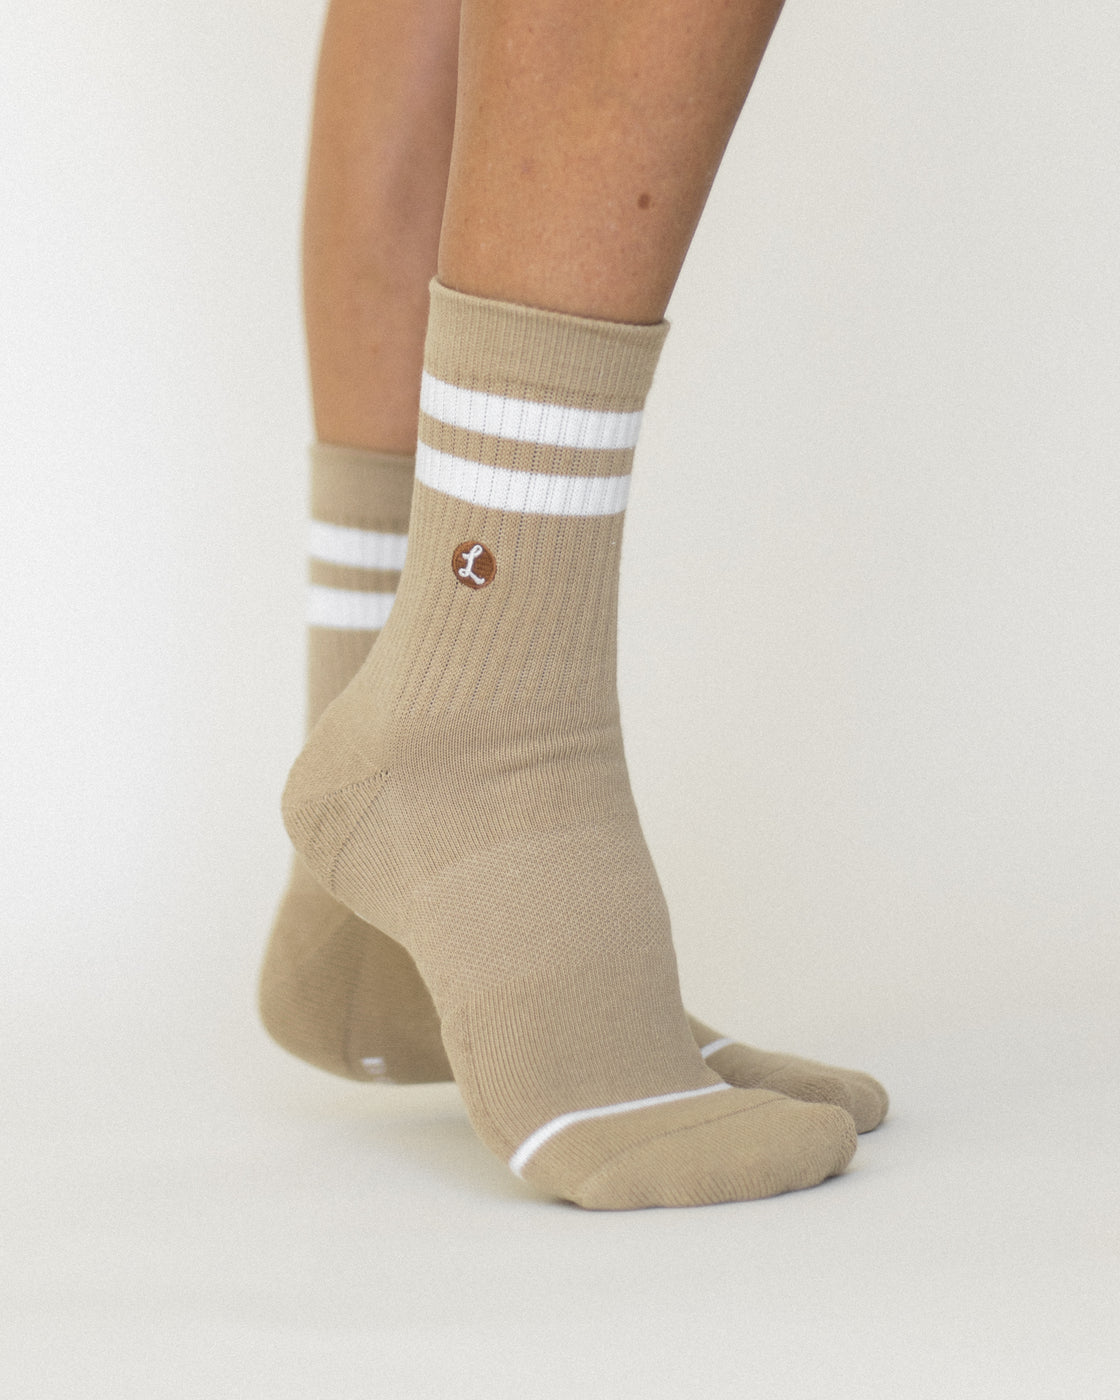 a person's legs wearing socks